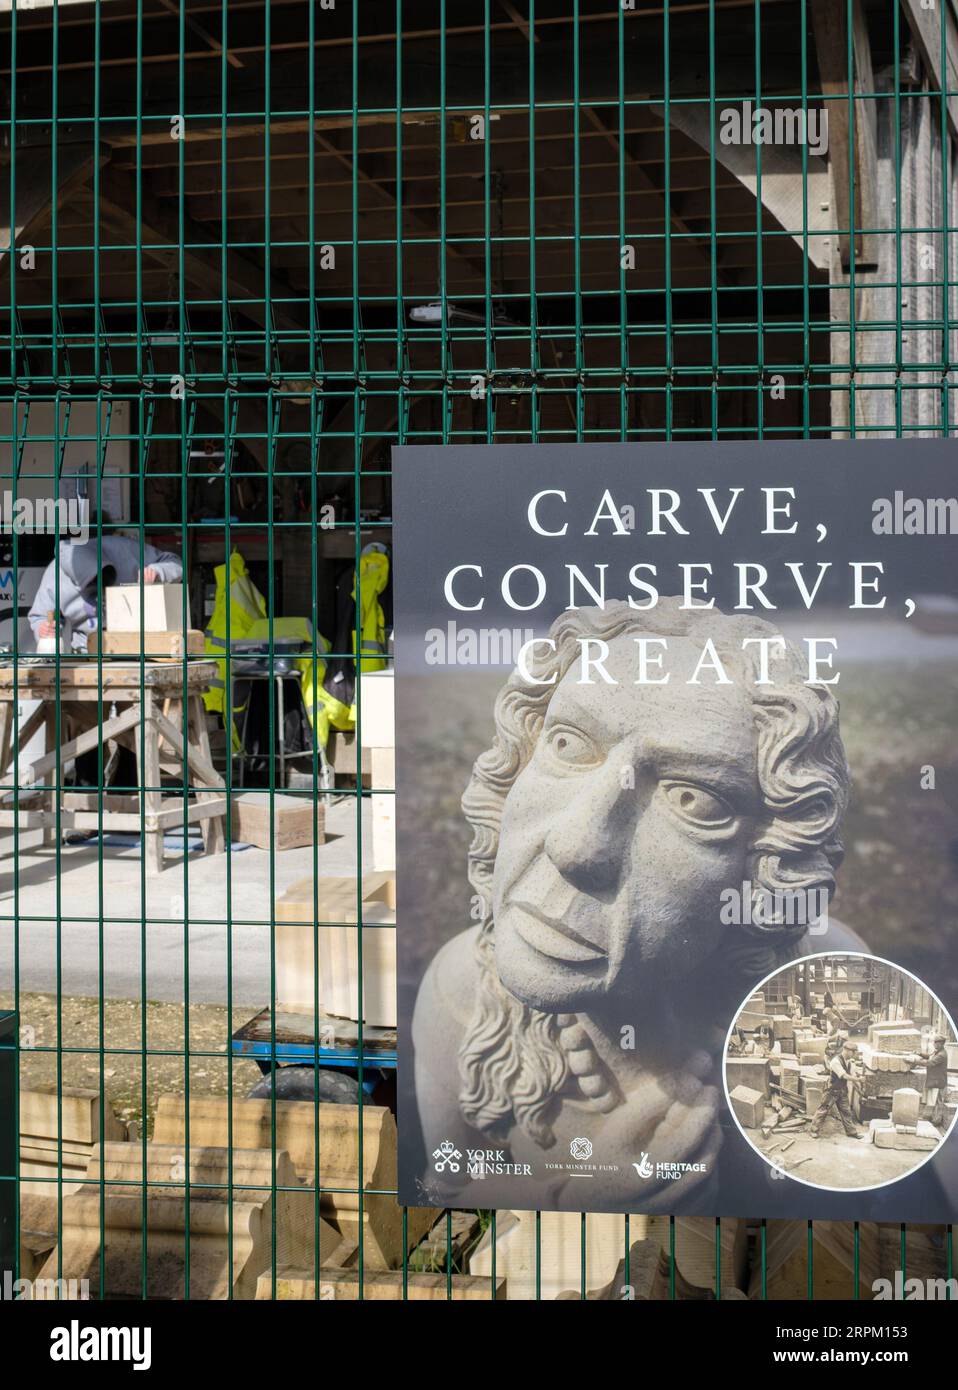 Intagliare conserve Create, lavori di restauro in muratura di pietra in corso sulla Cattedrale di York, Yorkshire, Inghilterra Foto Stock